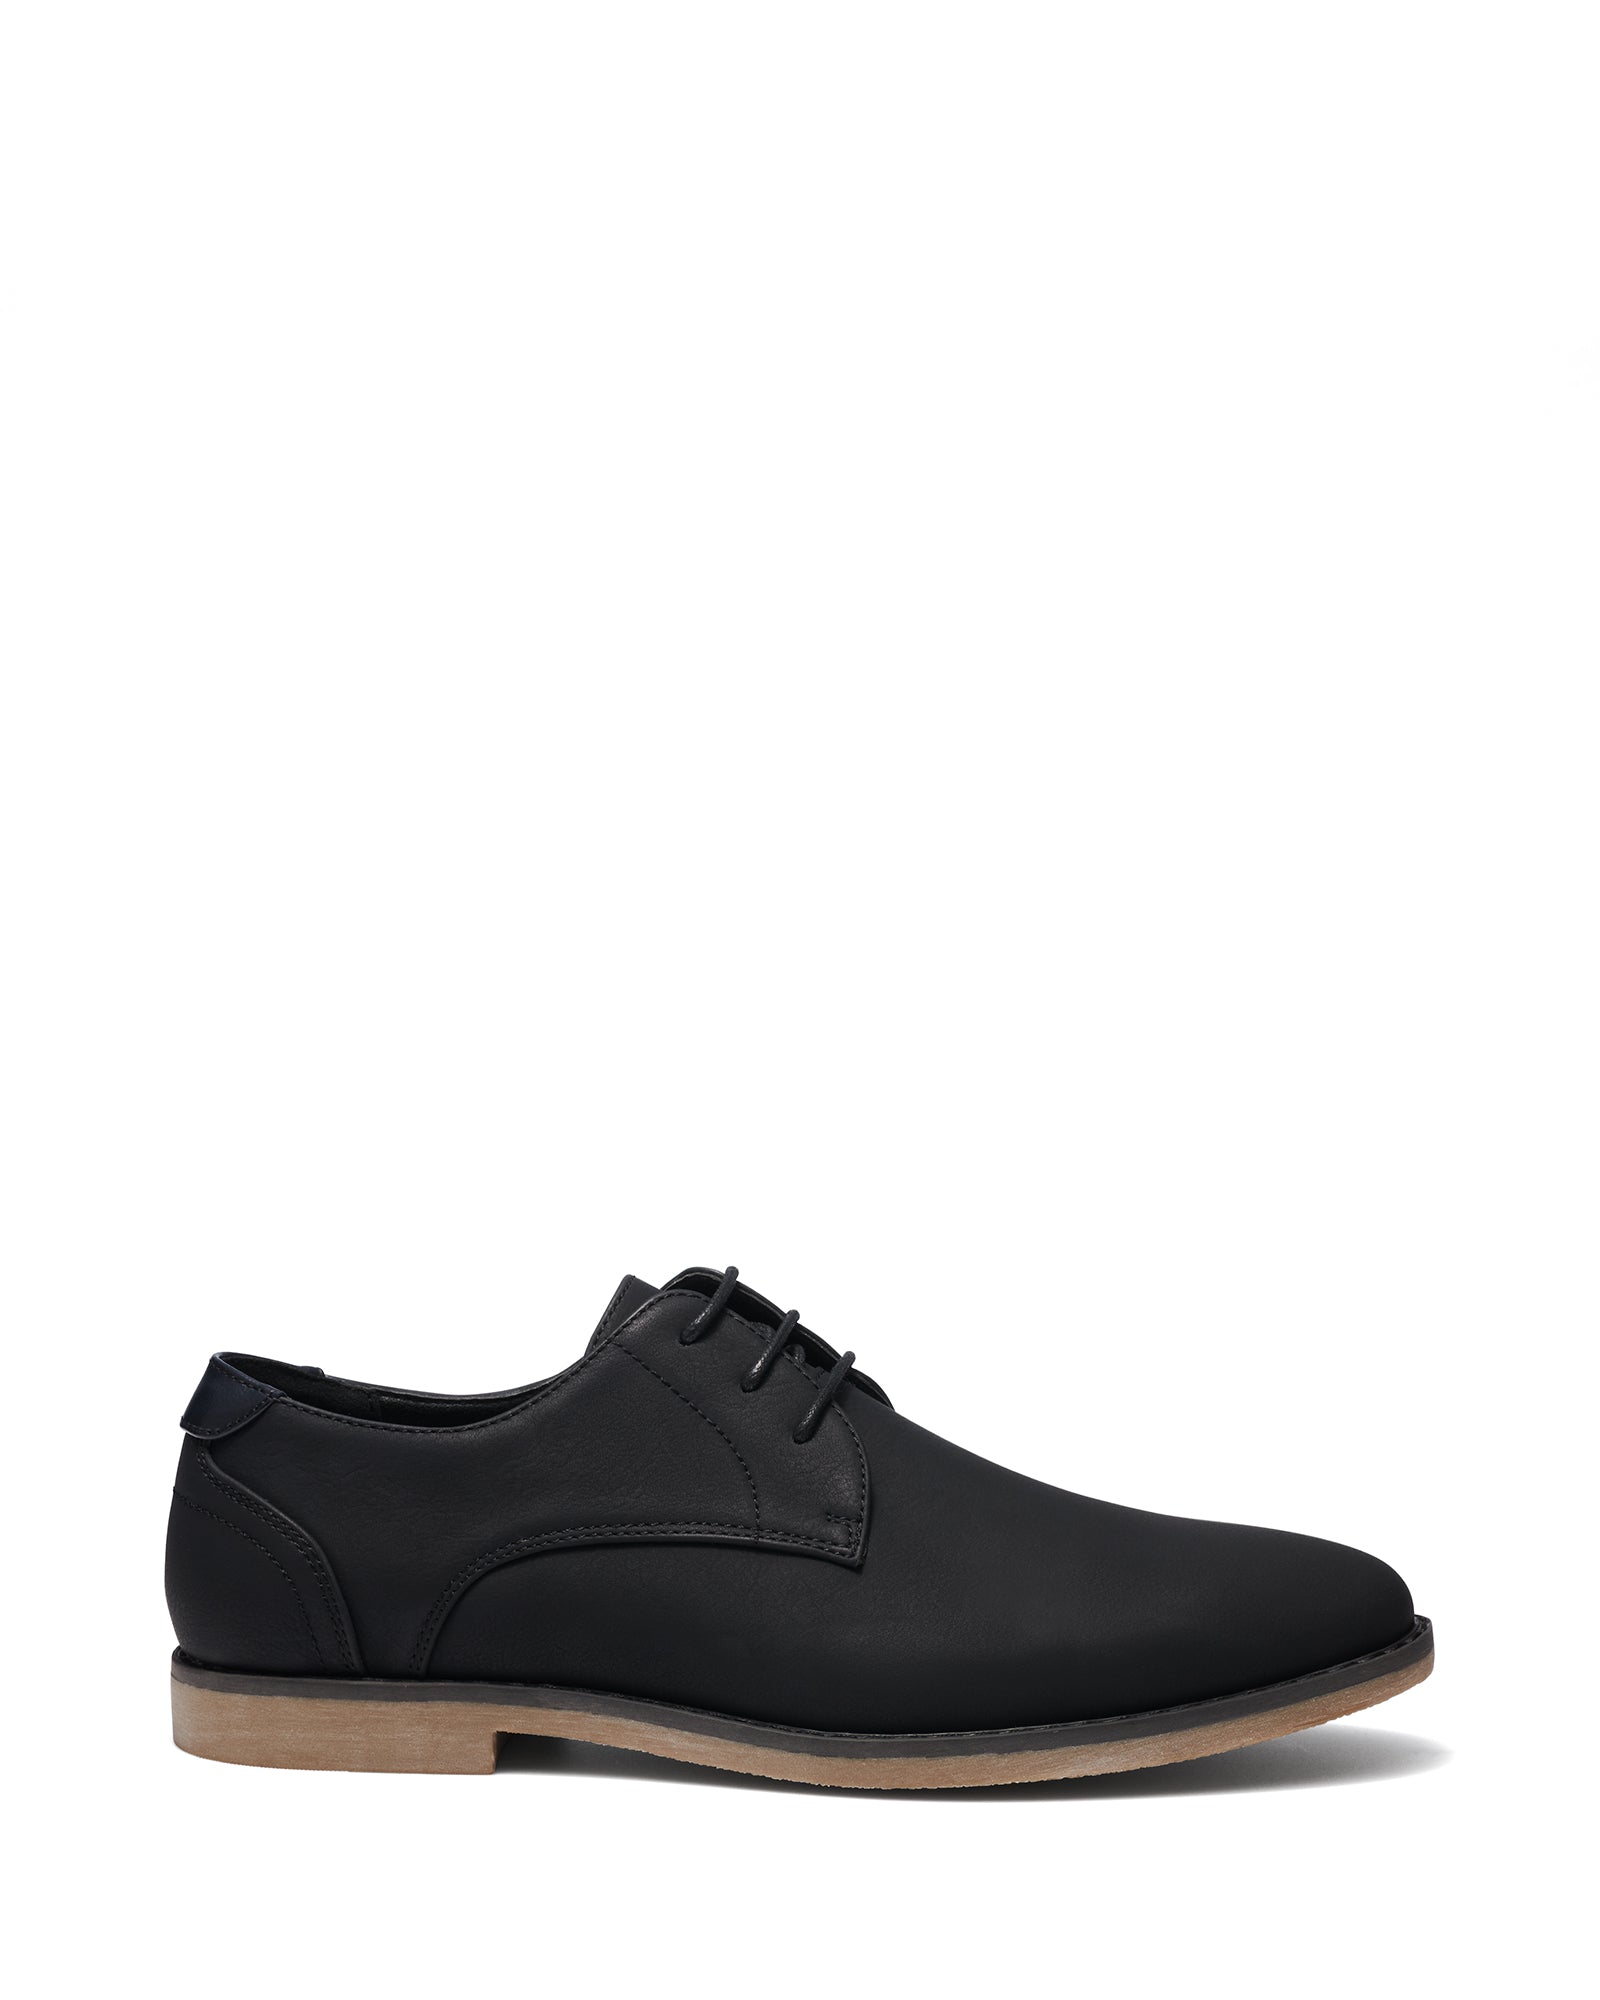 Uncut Shoes Caldwell Black | Men's Dress Shoe | Derby | Lace Up | Work